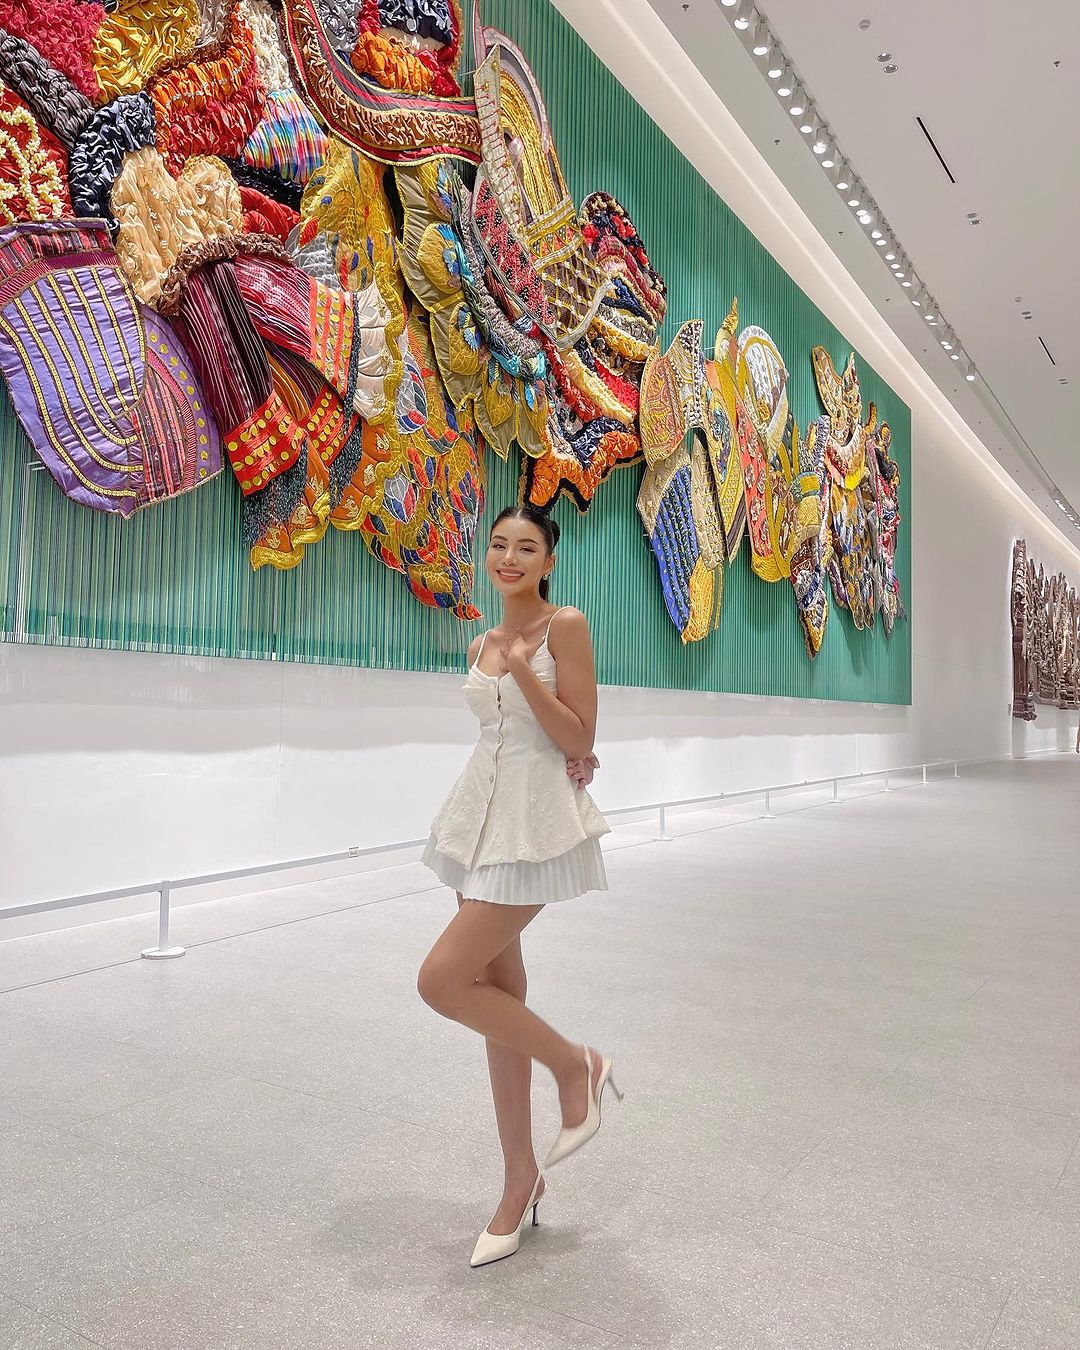 一位女士穿著 .lookbook.select 的蘭花吊帶背心和高跟鞋，在藝廊裡俏皮地擺著姿勢，身後是色彩繽紛、有紋理的牆壁雕塑。 🌹倒數優惠至5月19日